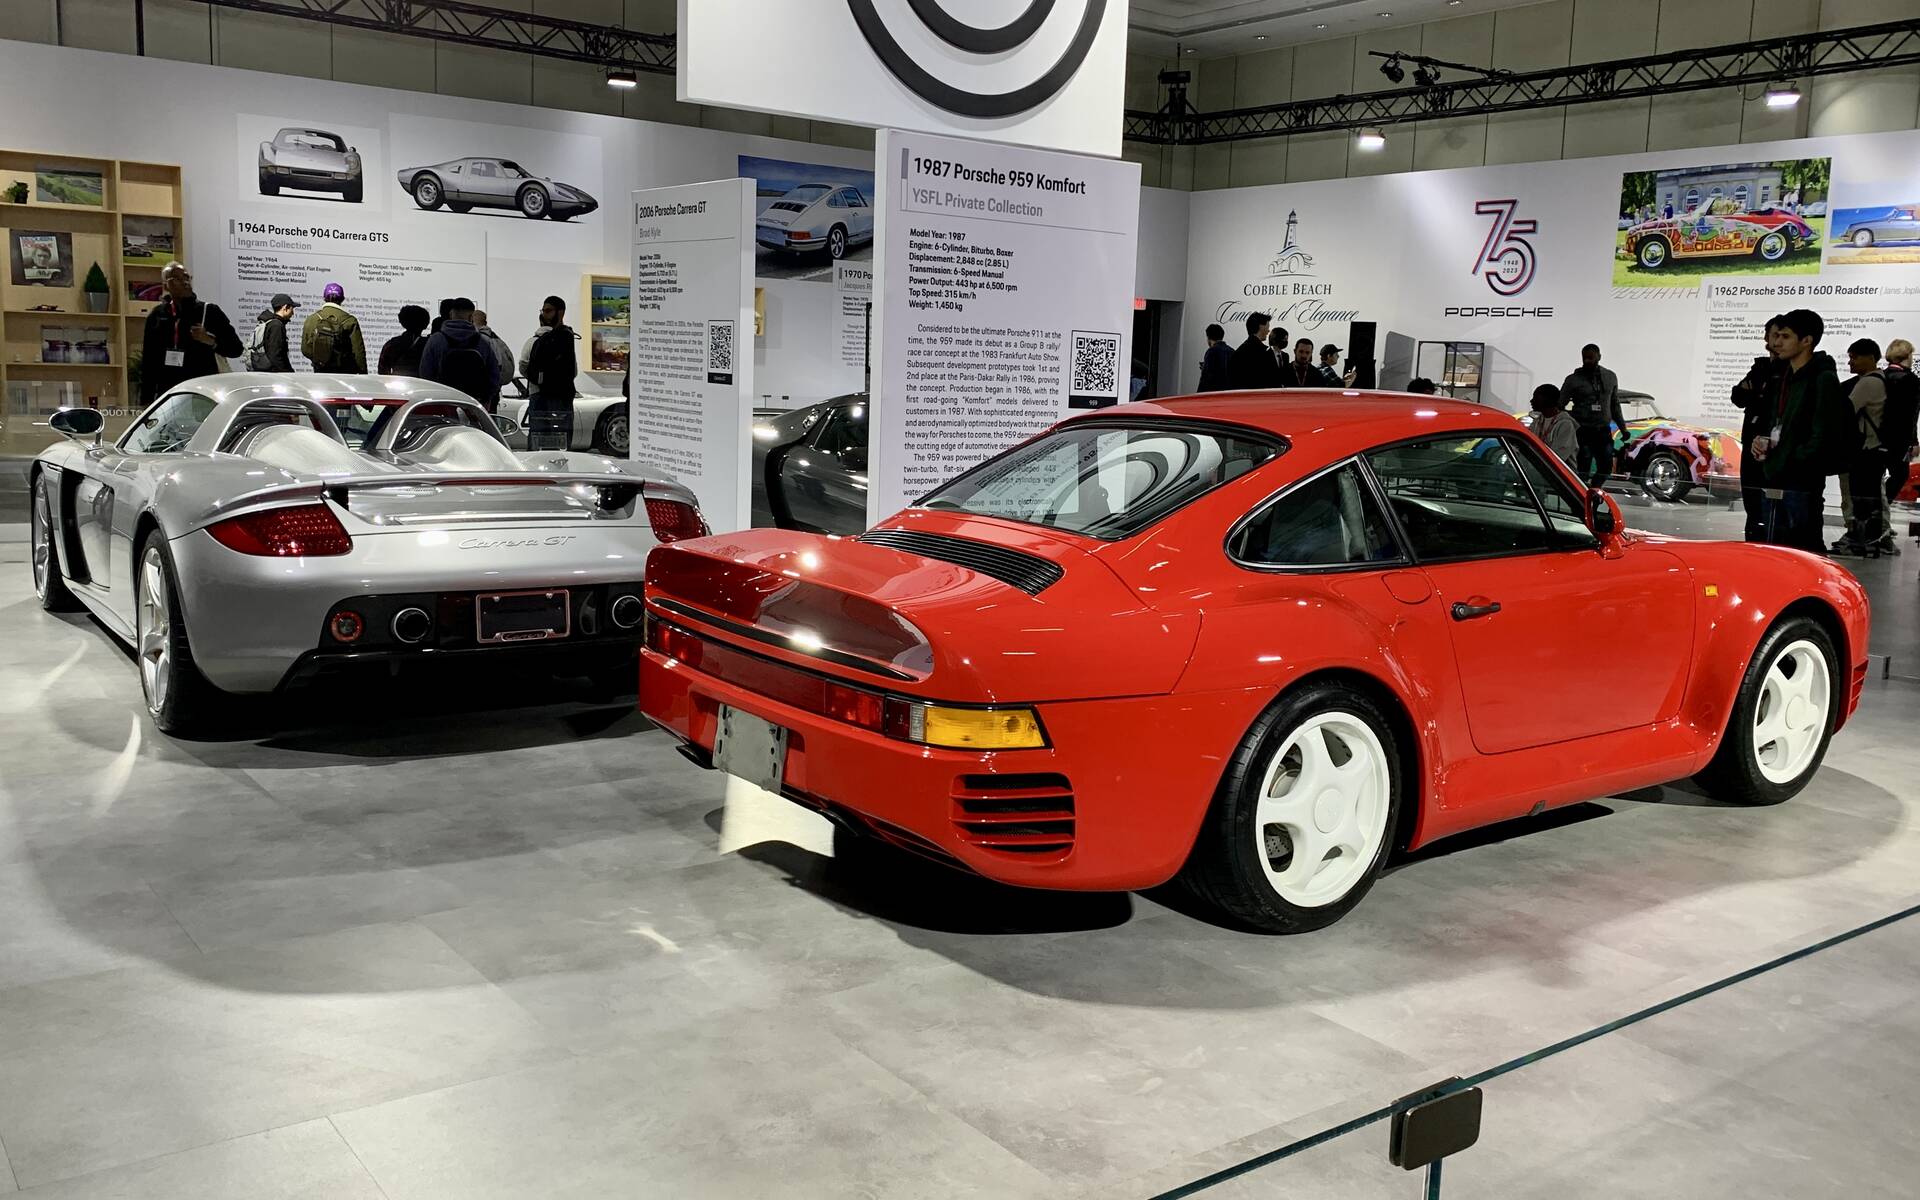 <p><strong>2006 Porsche Carrera GT and 1987 Porsche 959</strong></p>